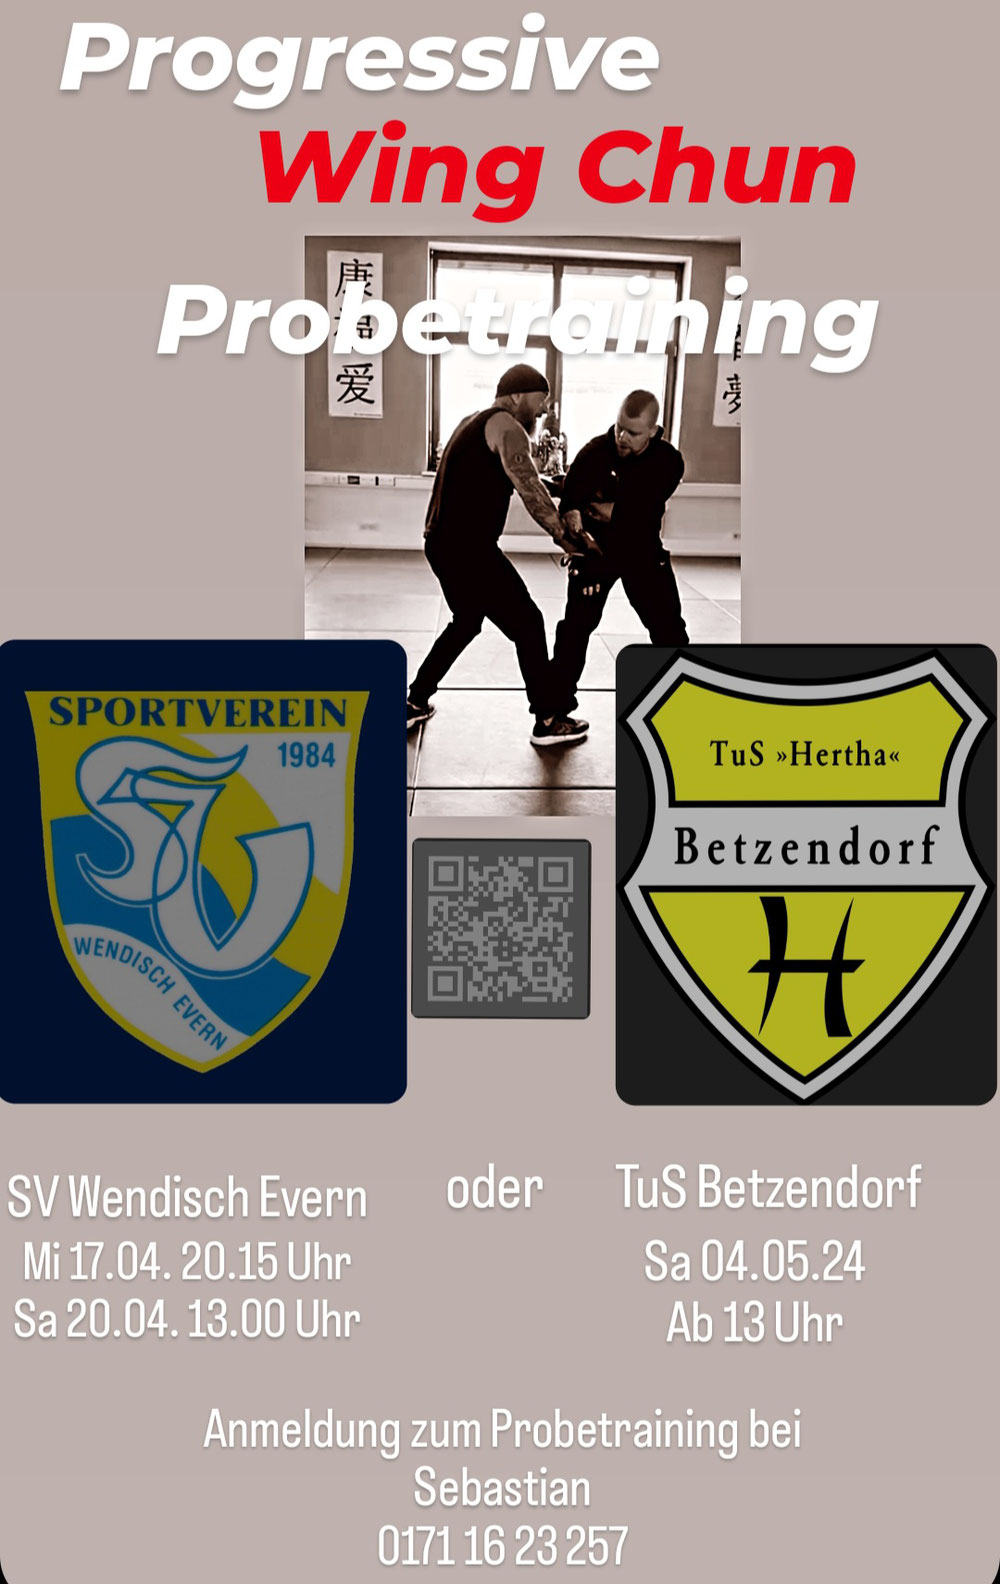 Progressive Wing Chun in Betzendorf und Wendisch Evern